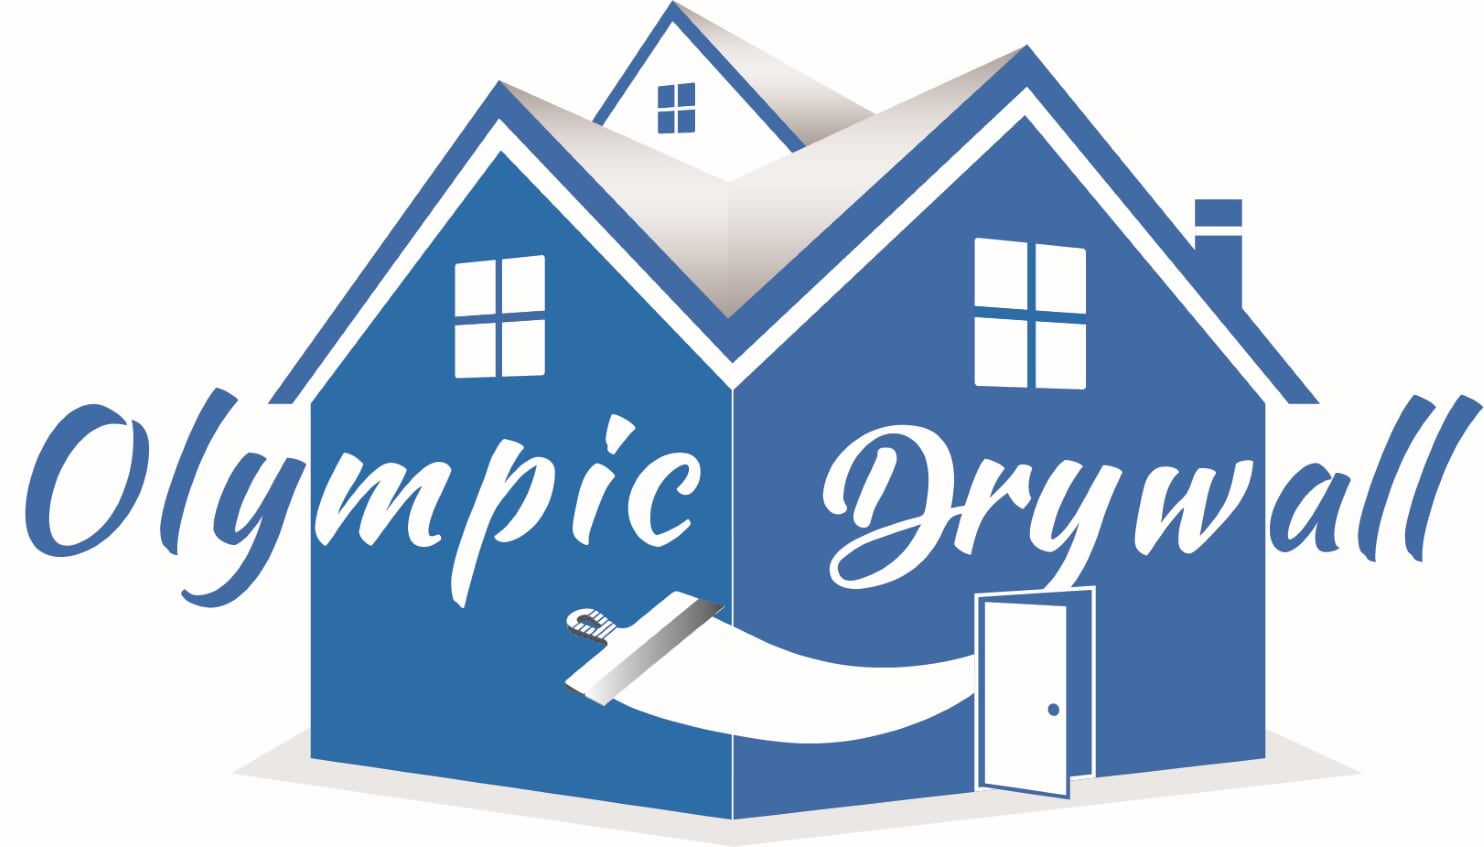 Olympic Drywall